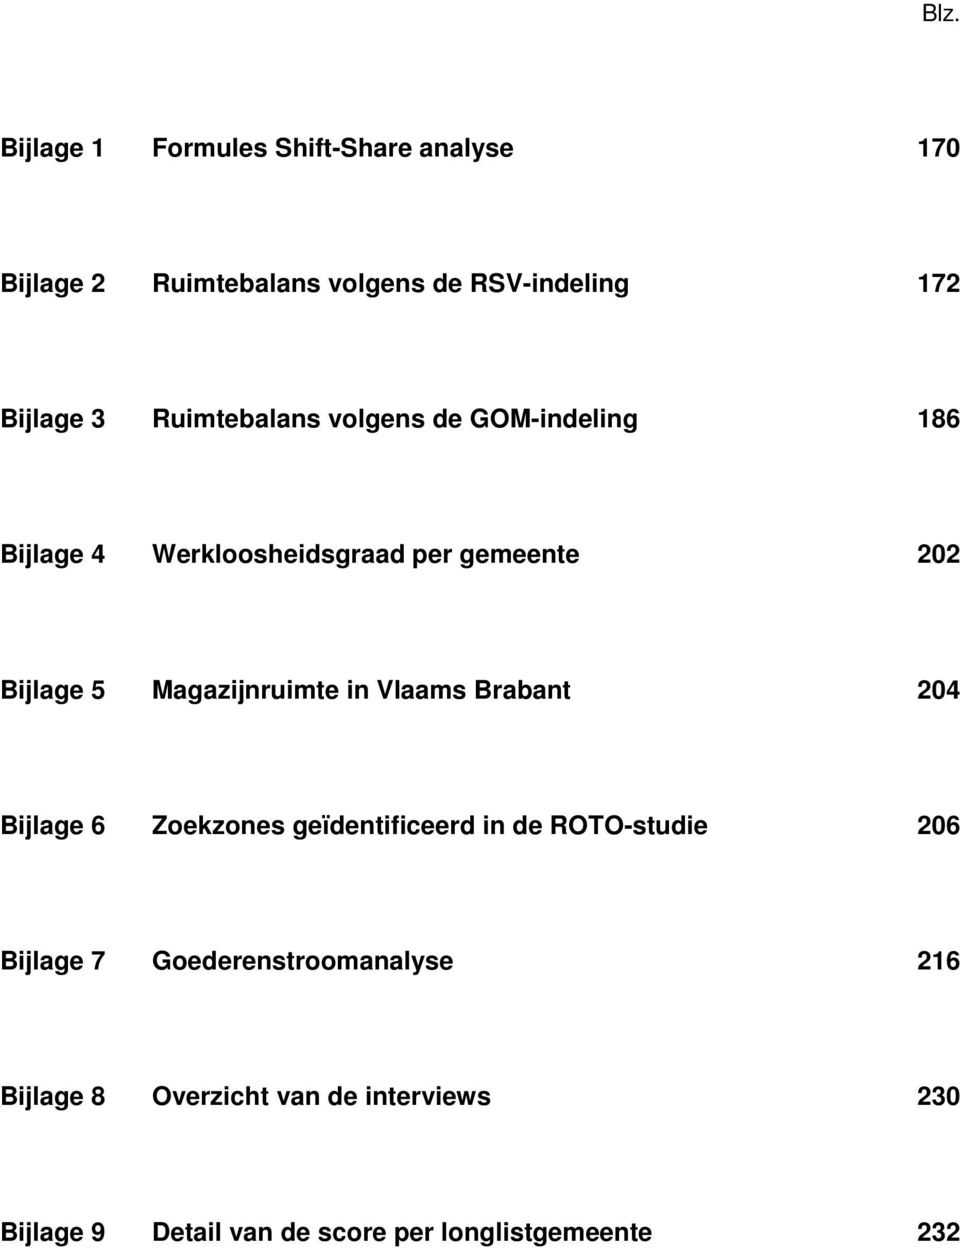 Magazijnruimte in Vlaams Brabant 204 Bijlage 6 Zoekzones geïdentificeerd in de ROTO-studie 206 Bijlage 7